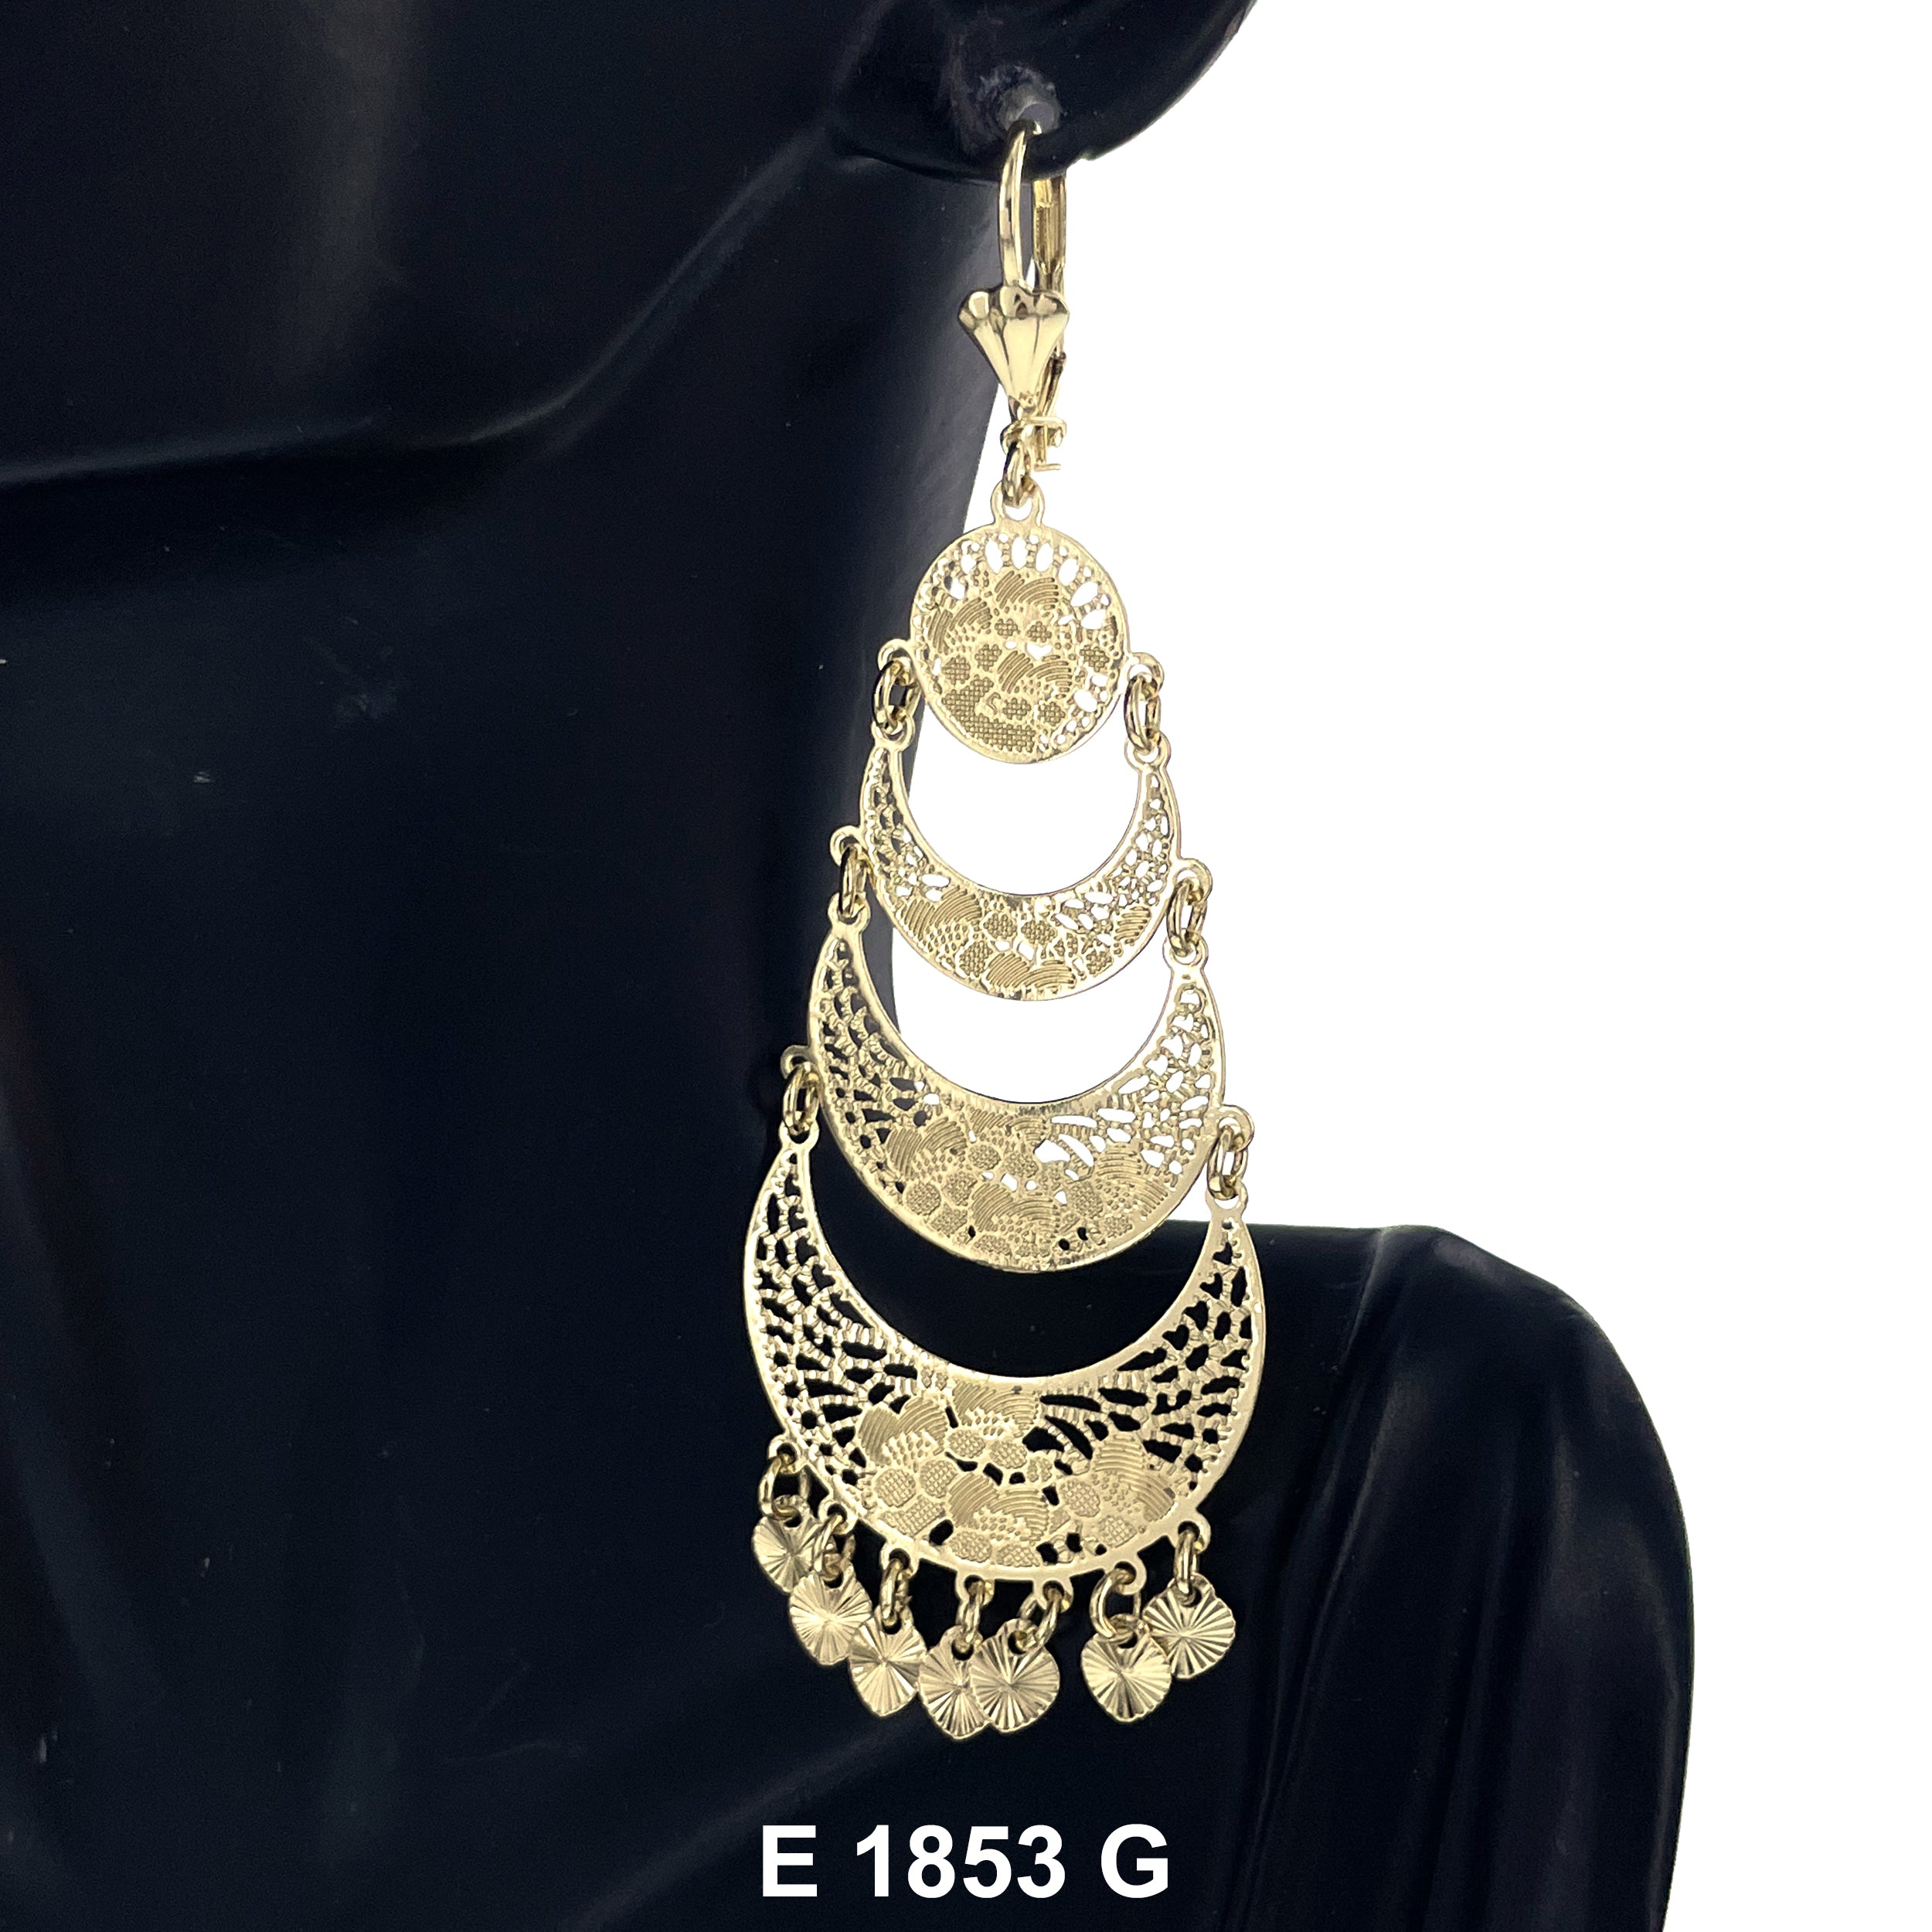 Filligree Earrings E 1853 G